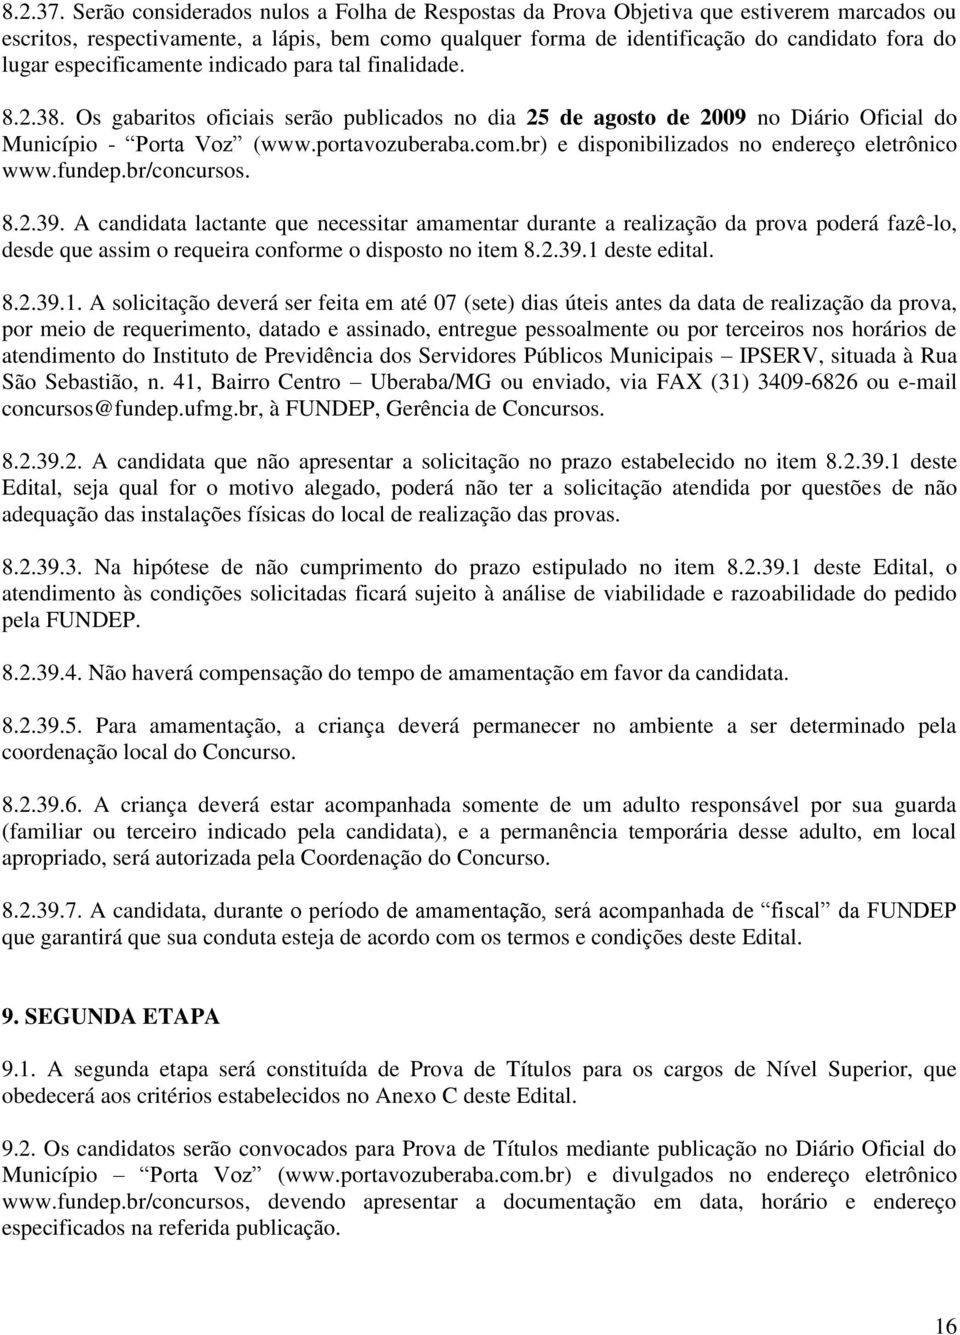 especificamente indicado para tal finalidade. 8.2.38. Os gabaritos oficiais serão publicados no dia 25 de agosto de 2009 no Diário Oficial do Município - Porta Voz (www.portavozuberaba.com.